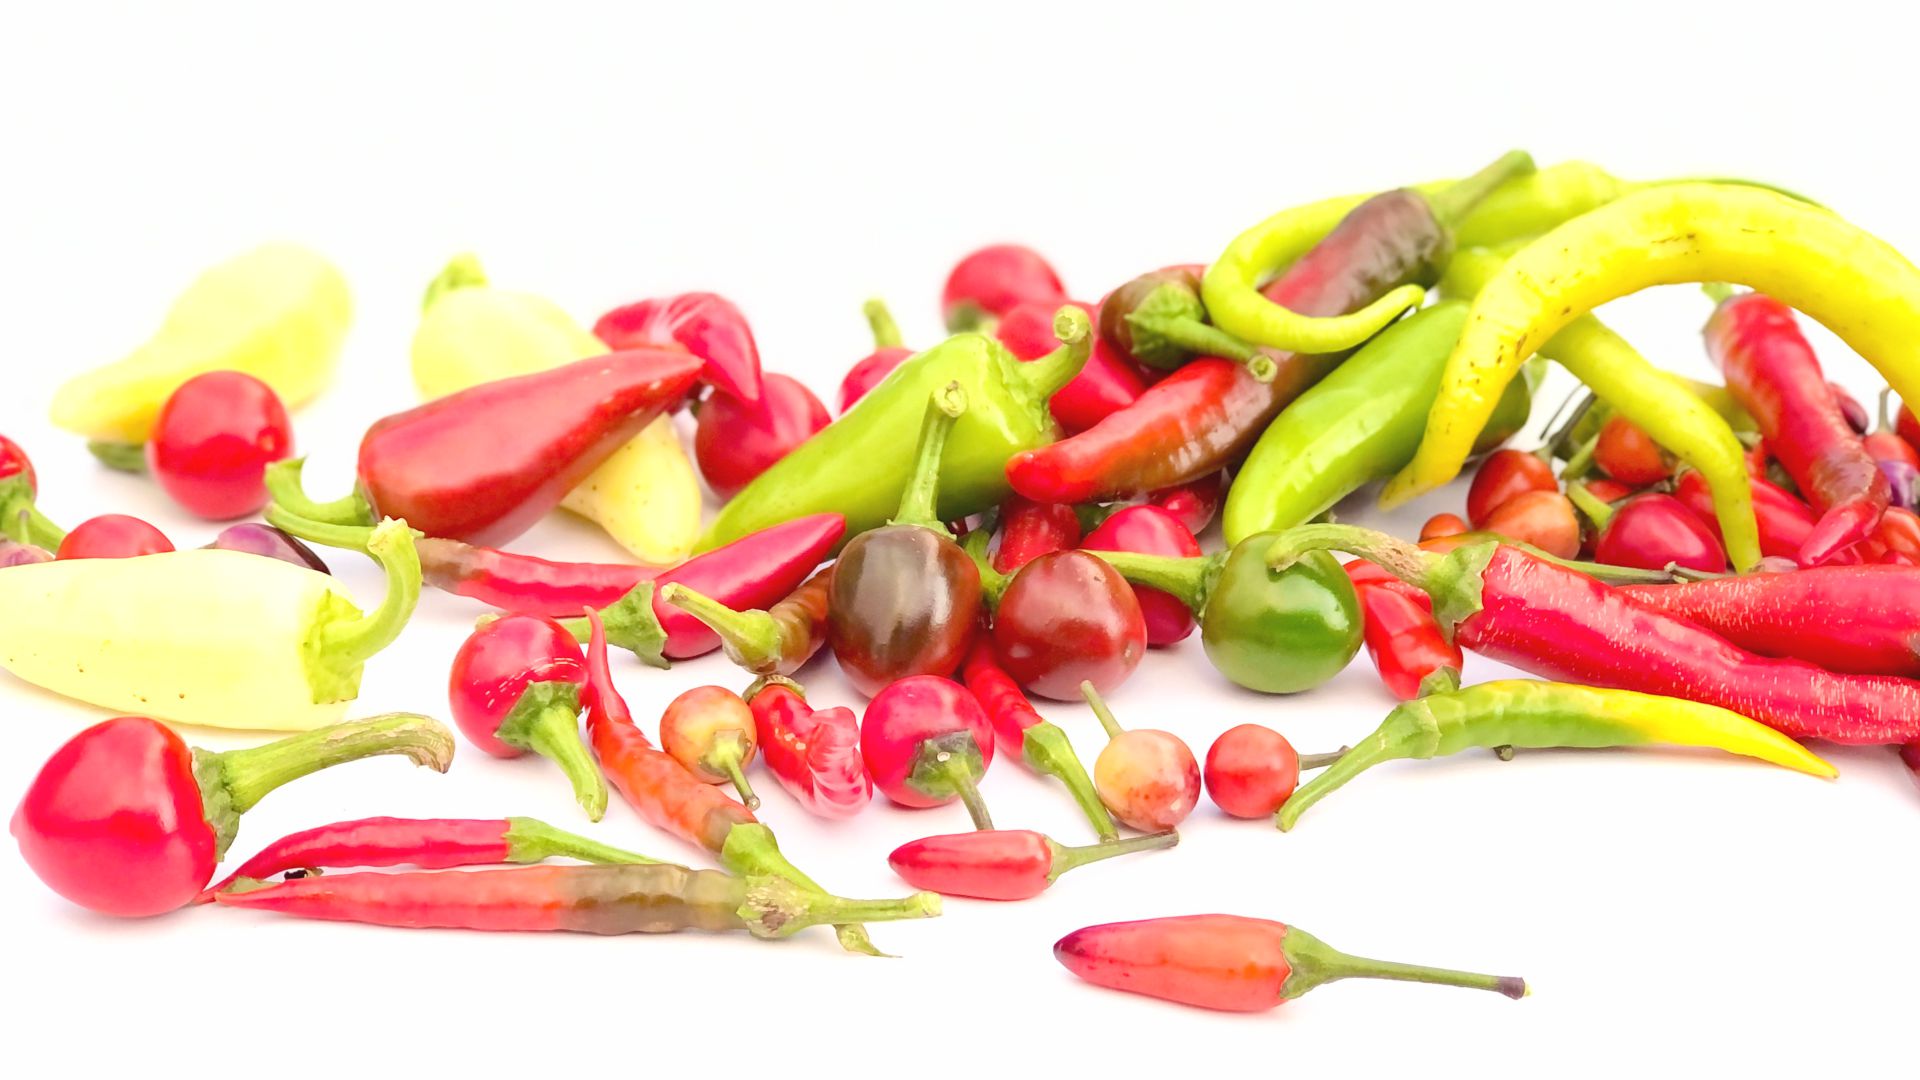 Das Bild zeigt viele frische Chili in unterschiedlichen Formen und Farben zum Kaufen